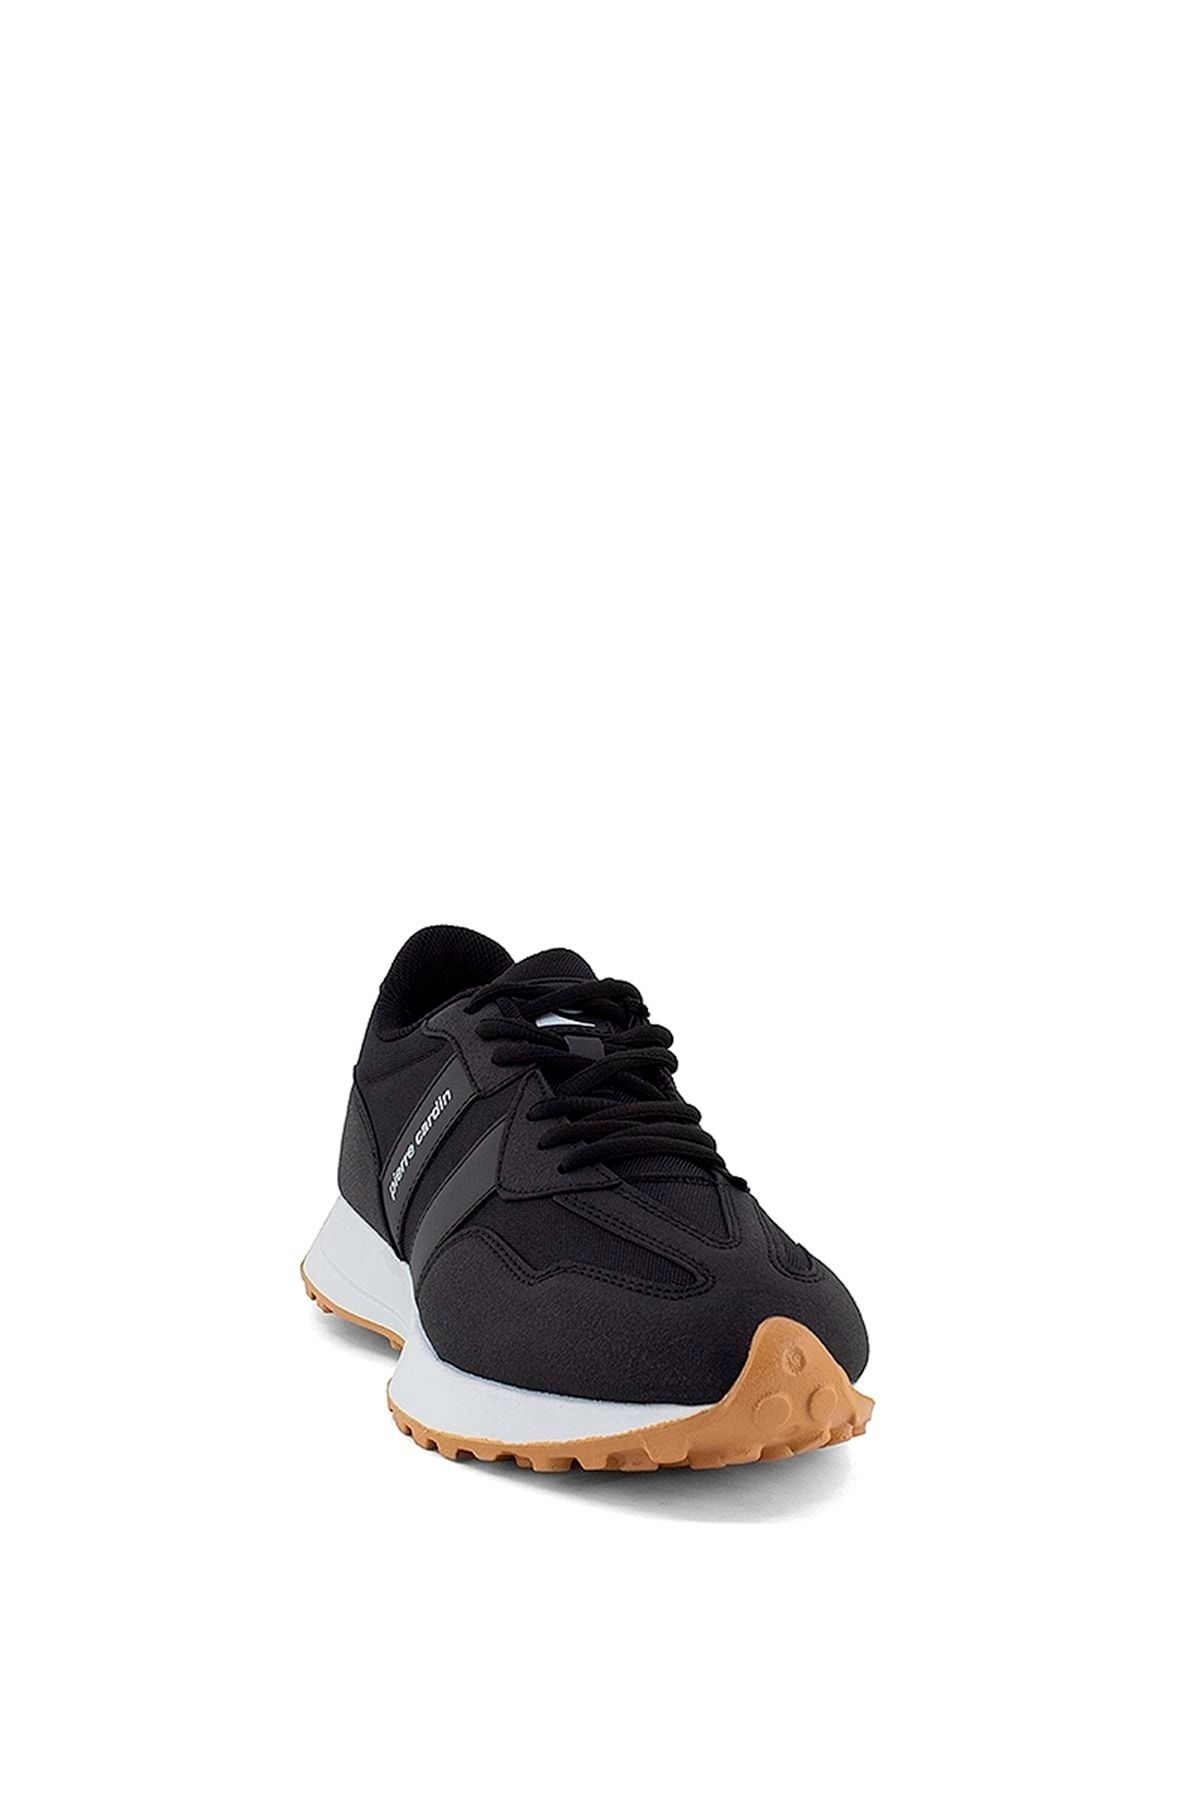 Pierre Cardin Pc-30999-31004 Unisex Sneaker Ayakkabı - Siyah - 40